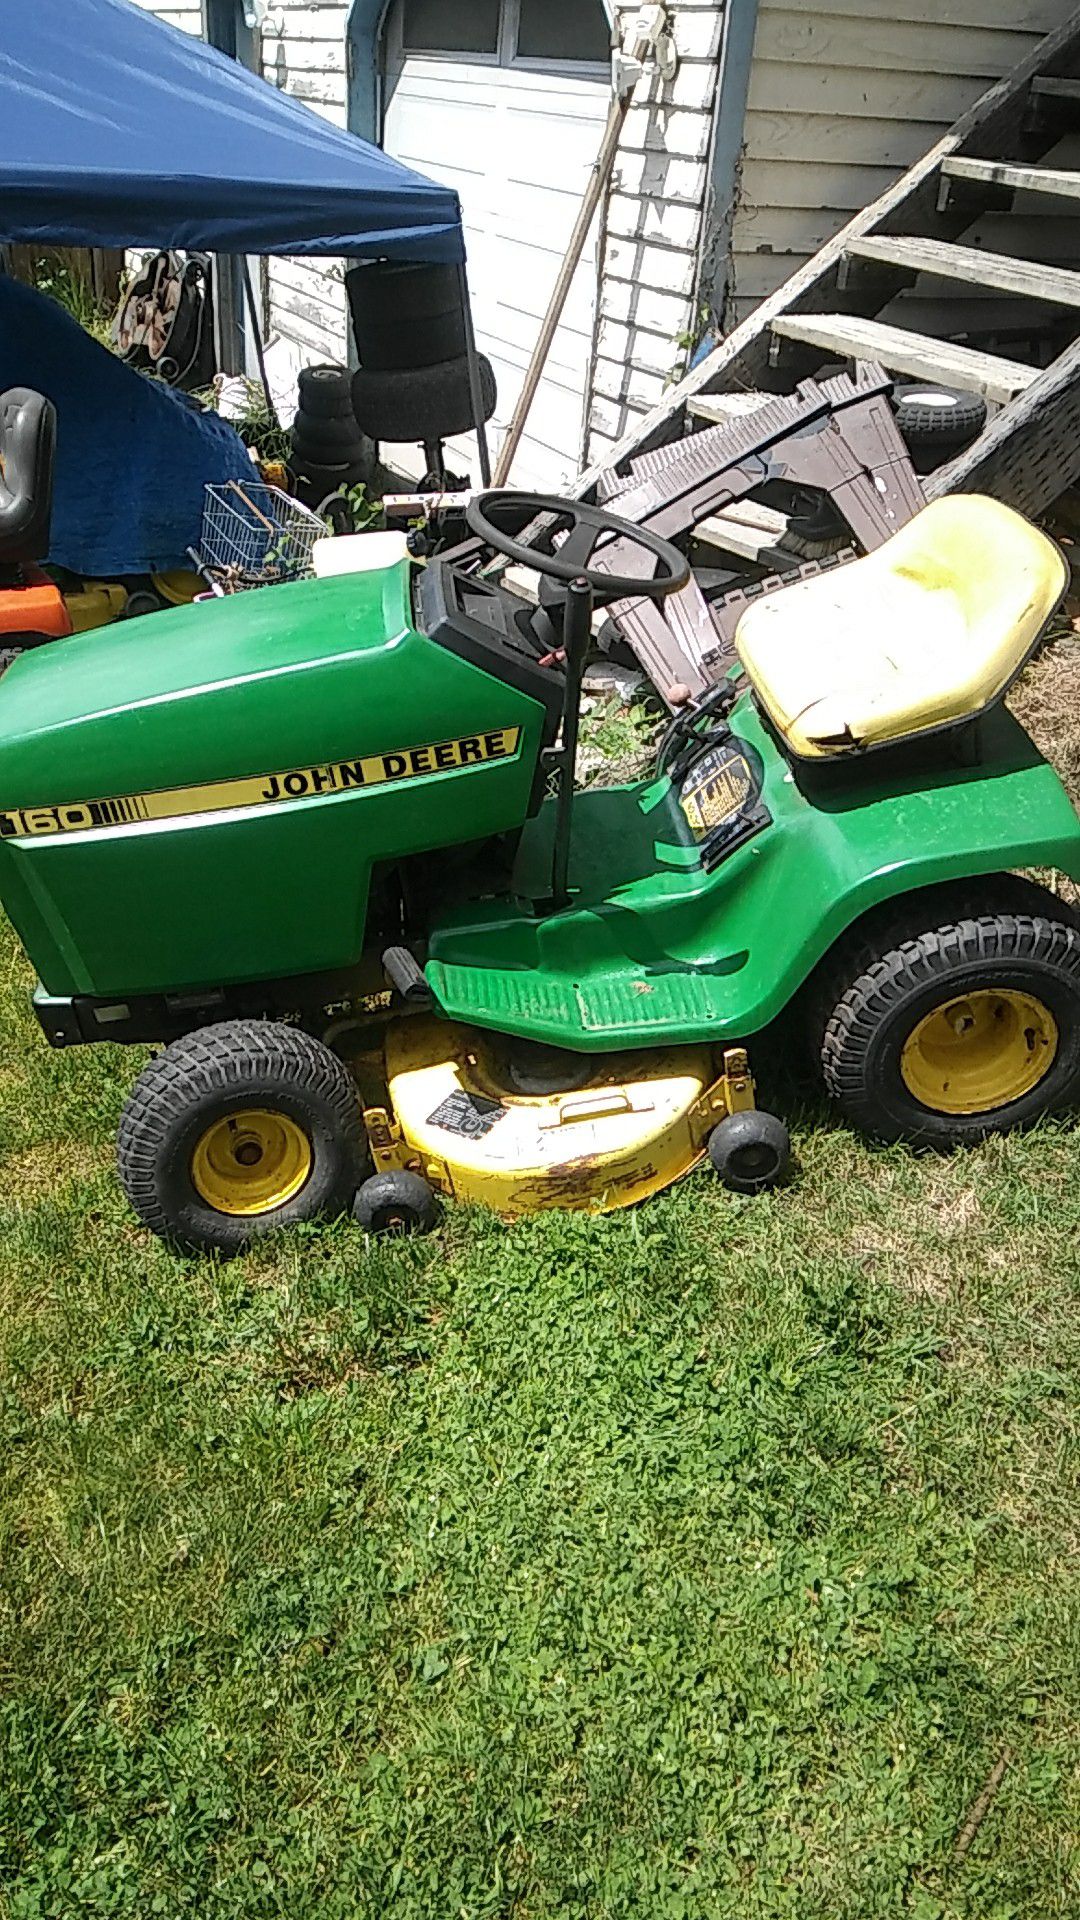 John Deere 160 mower